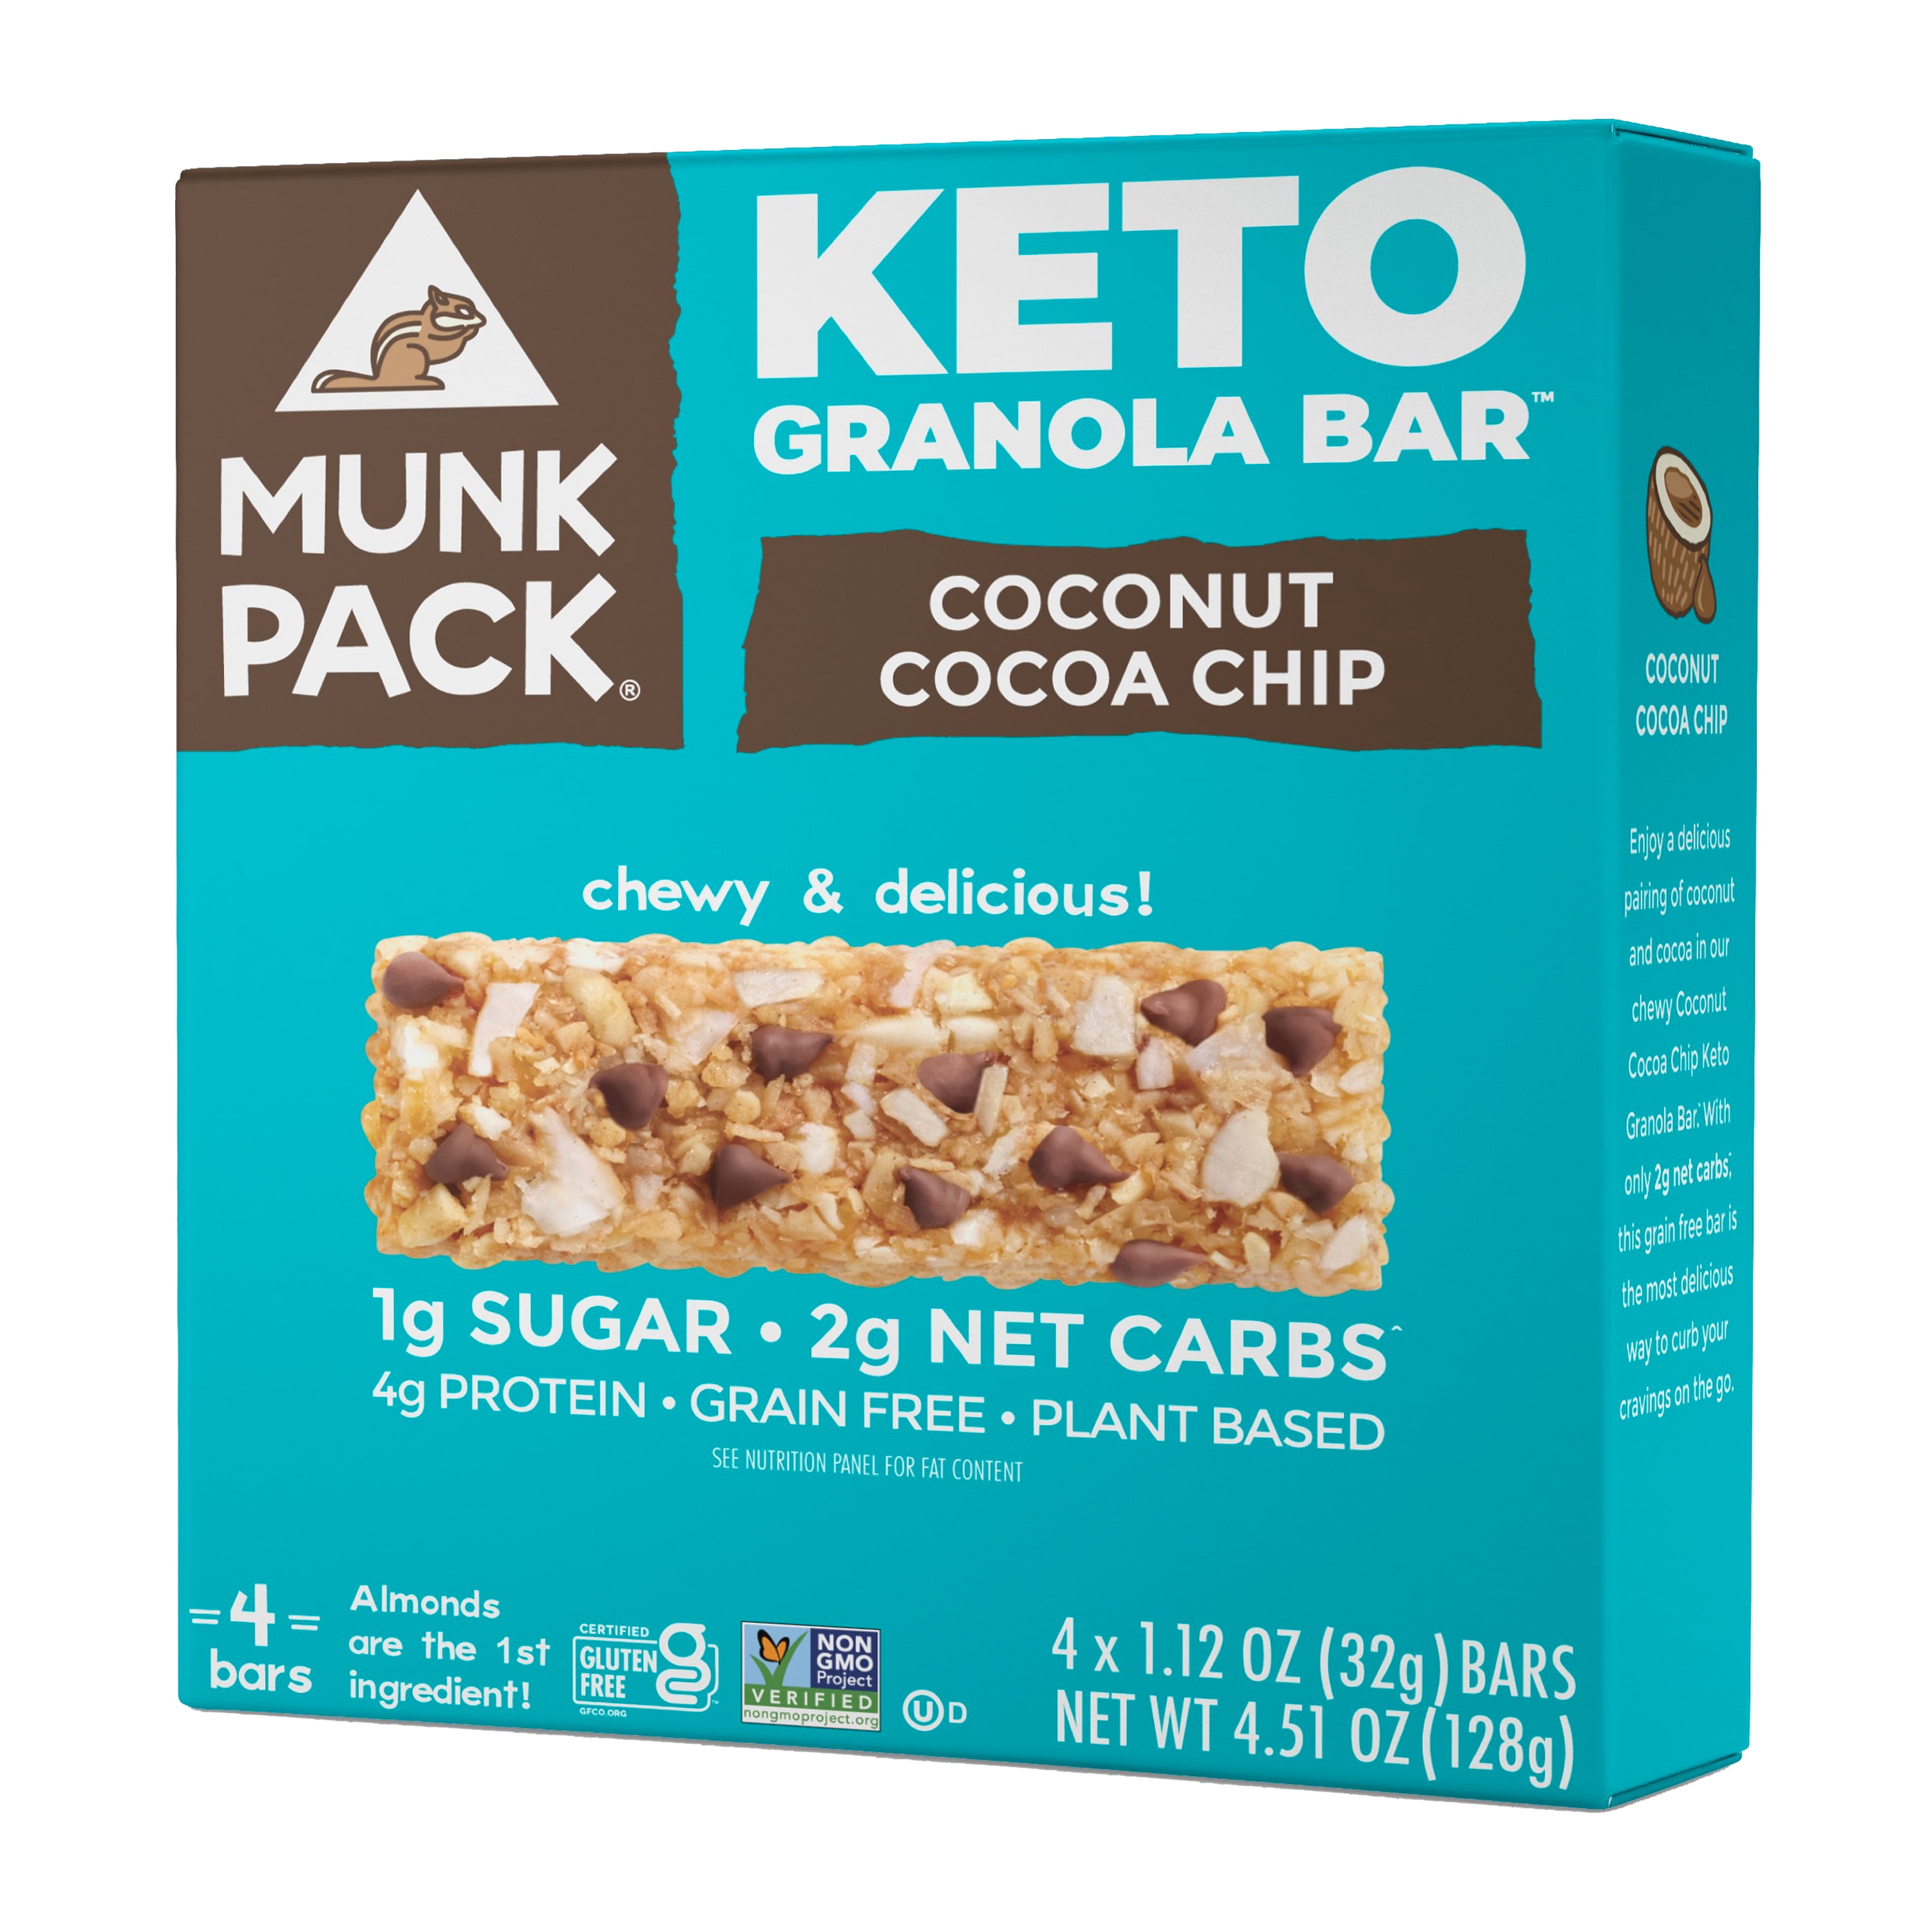 Munk Pack Keto Granola Bar Coconut Cocoa Chip, 4 Ct